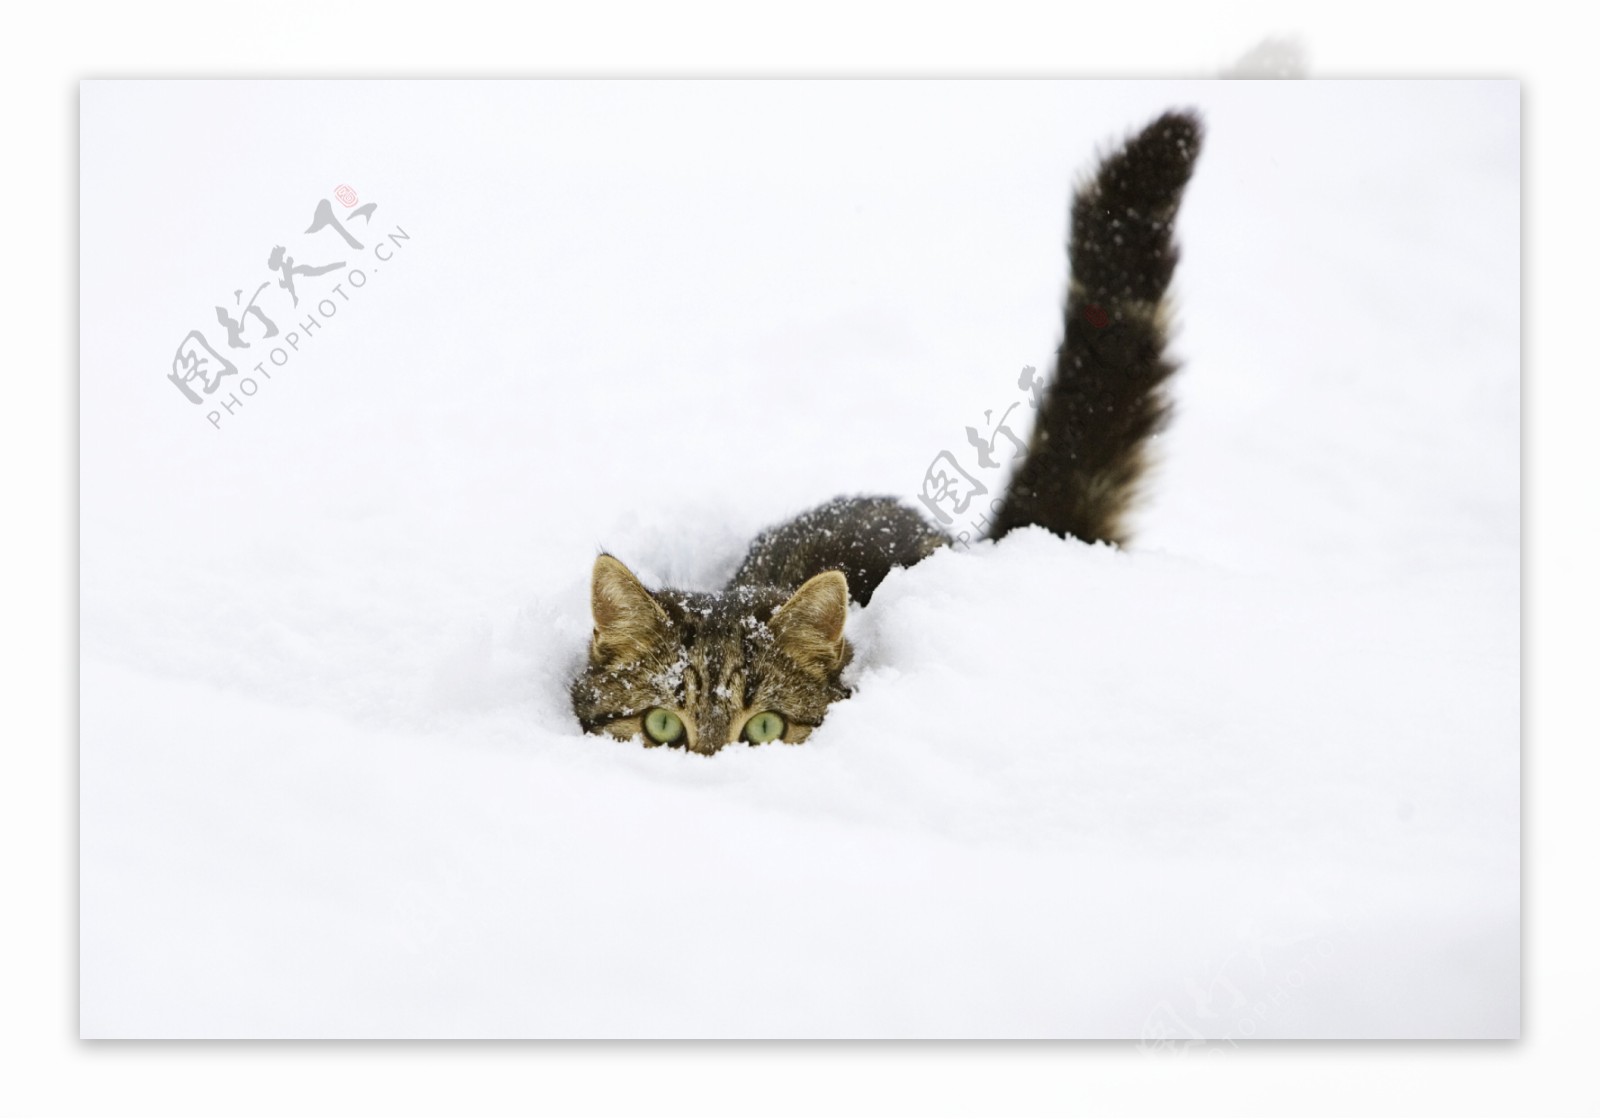 雪地里的猫咪